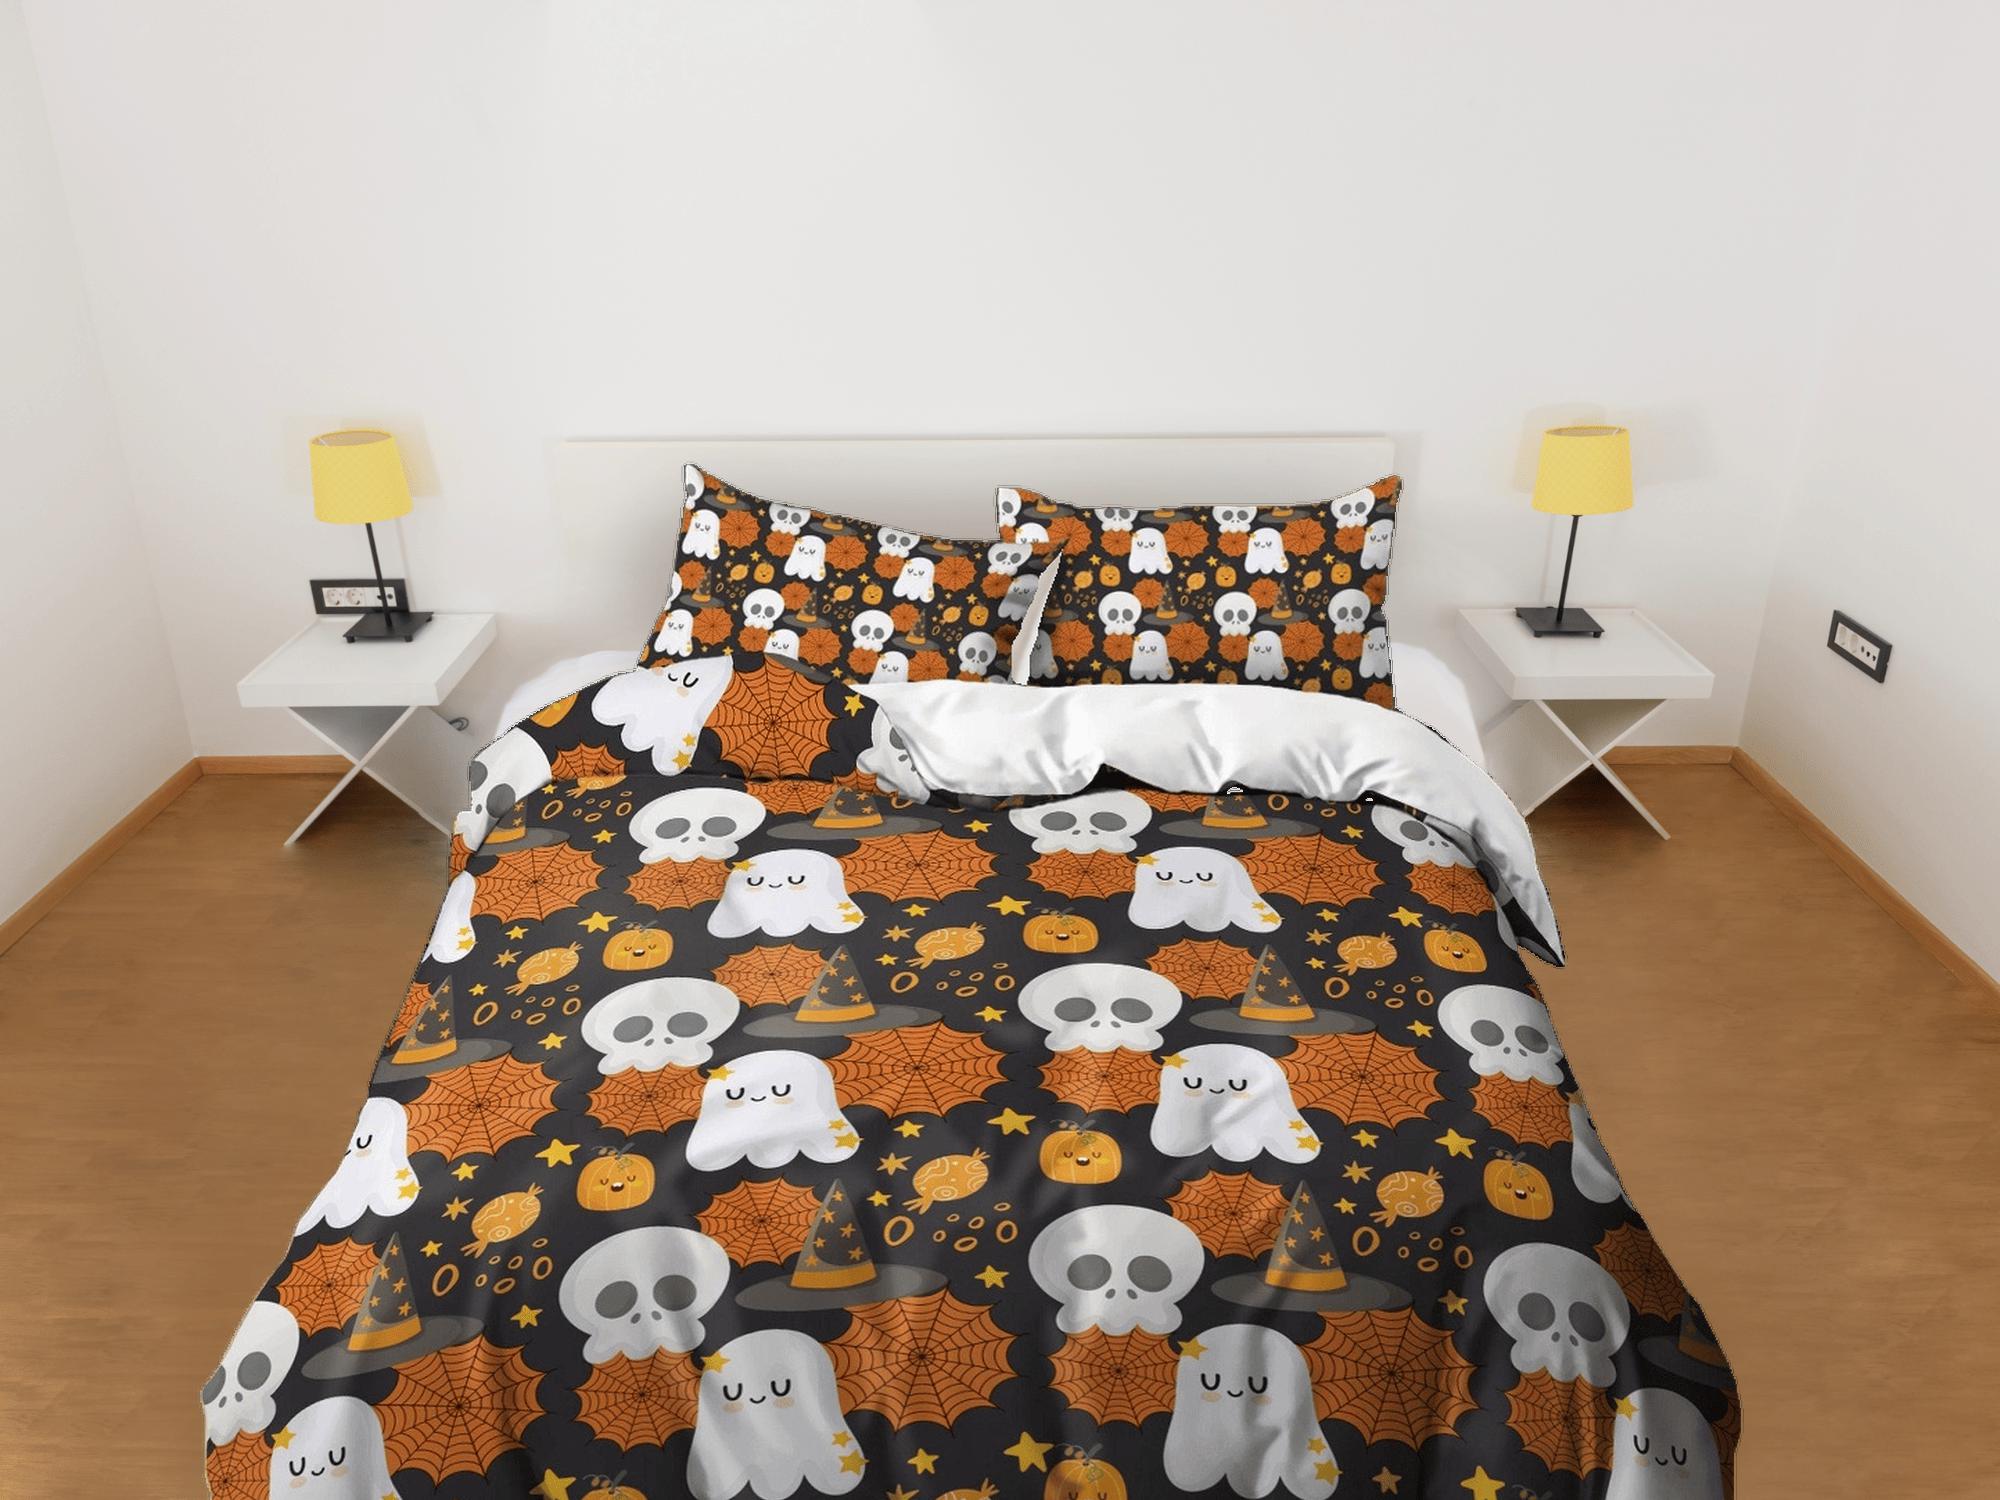 daintyduvet Cute ghost skull web halloween bedding & pillowcase, duvet cover set dorm bedding, halloween decor, nursery toddler bedding, halloween gift